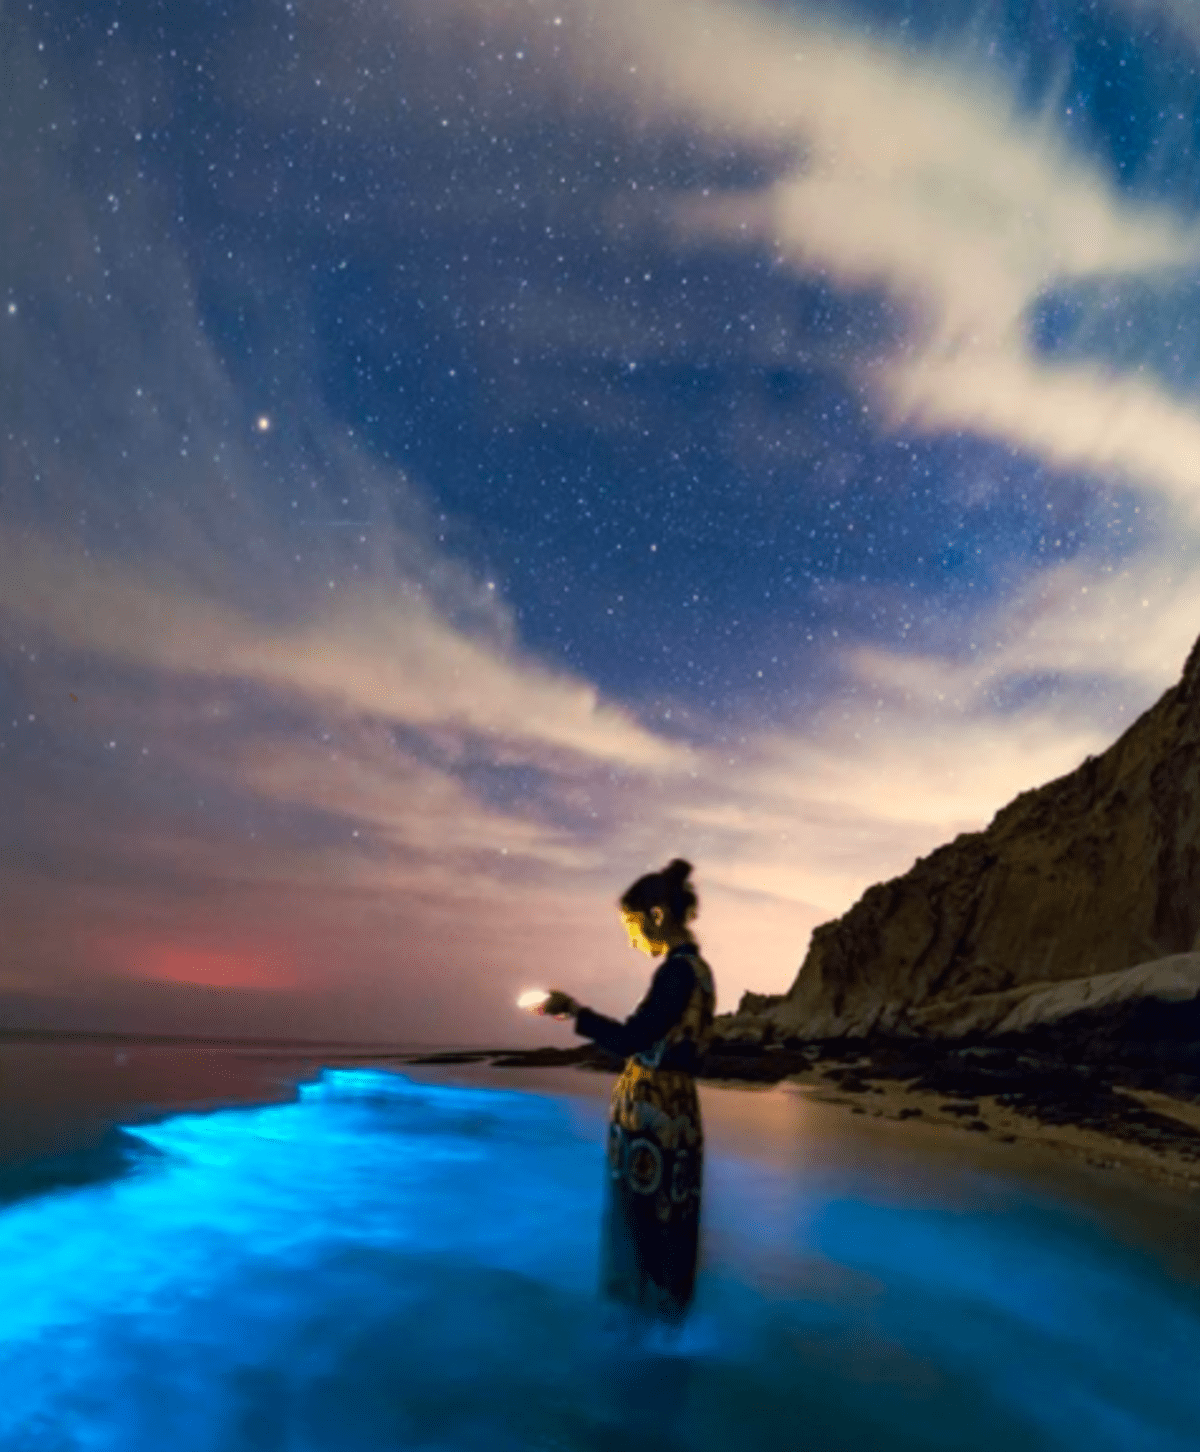 Jev nazývaný bioluminiscence způsobuje, že mořské vlny modře září